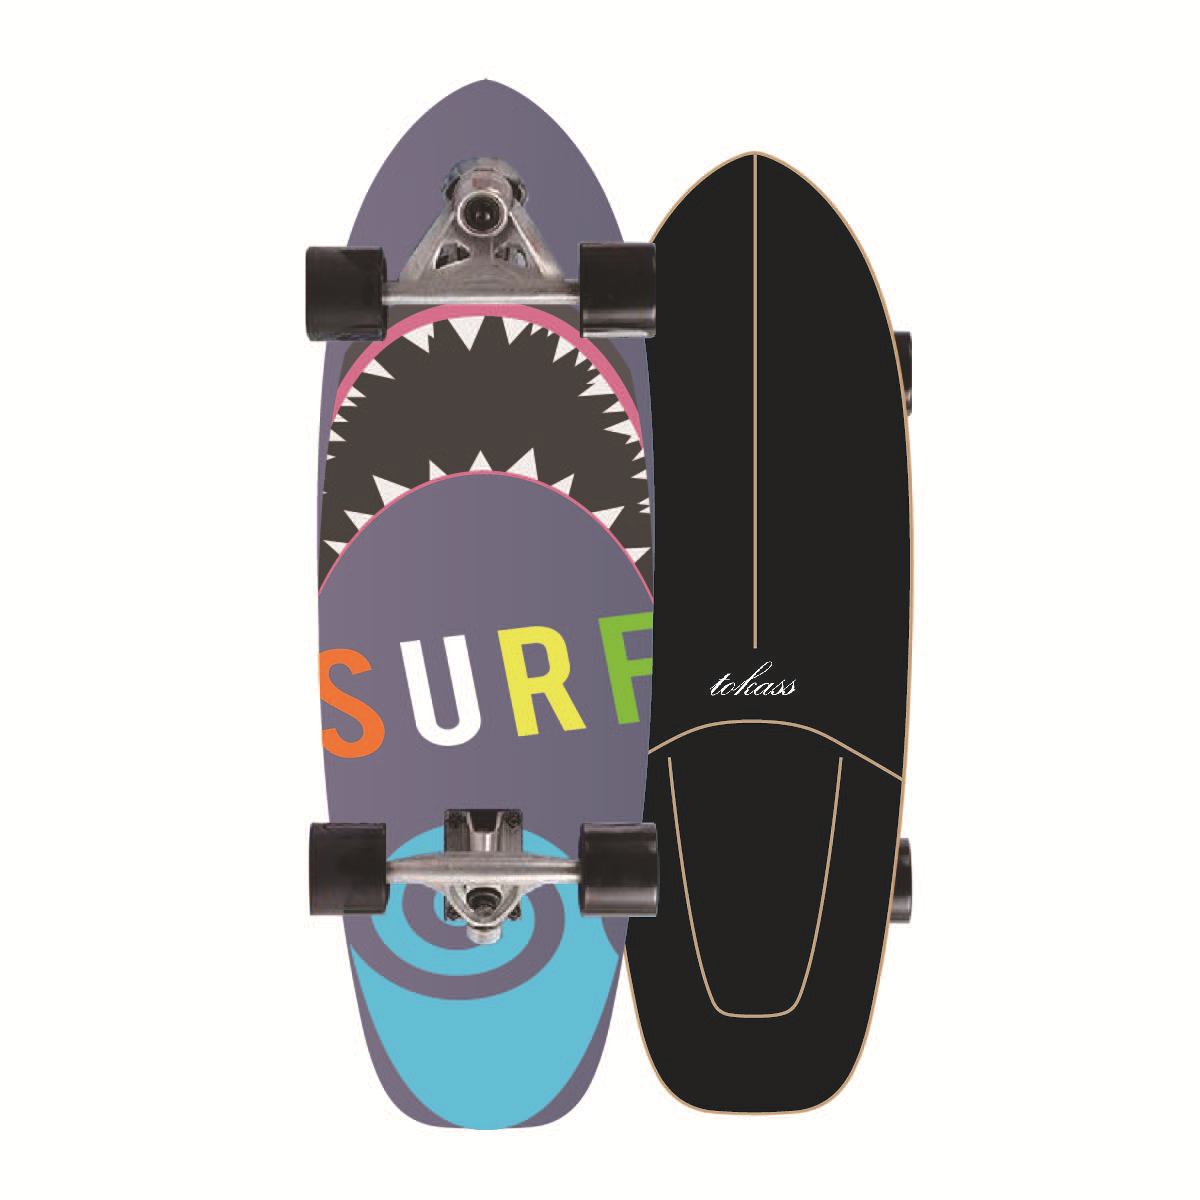 (สินค้าพร้อมส่ง) เซิร์ฟสเก็ต Surf Board CX7 สเก็ตบอร์ด เซิร์ฟบอร์ด Surf Skate สเก็ตบอร์ดคุณภาพดี เซริฟสเก็ต รองรับน้ำหนักได้ 150 กก. ล้อมุนได้ แถมด้วยกระเป๋า